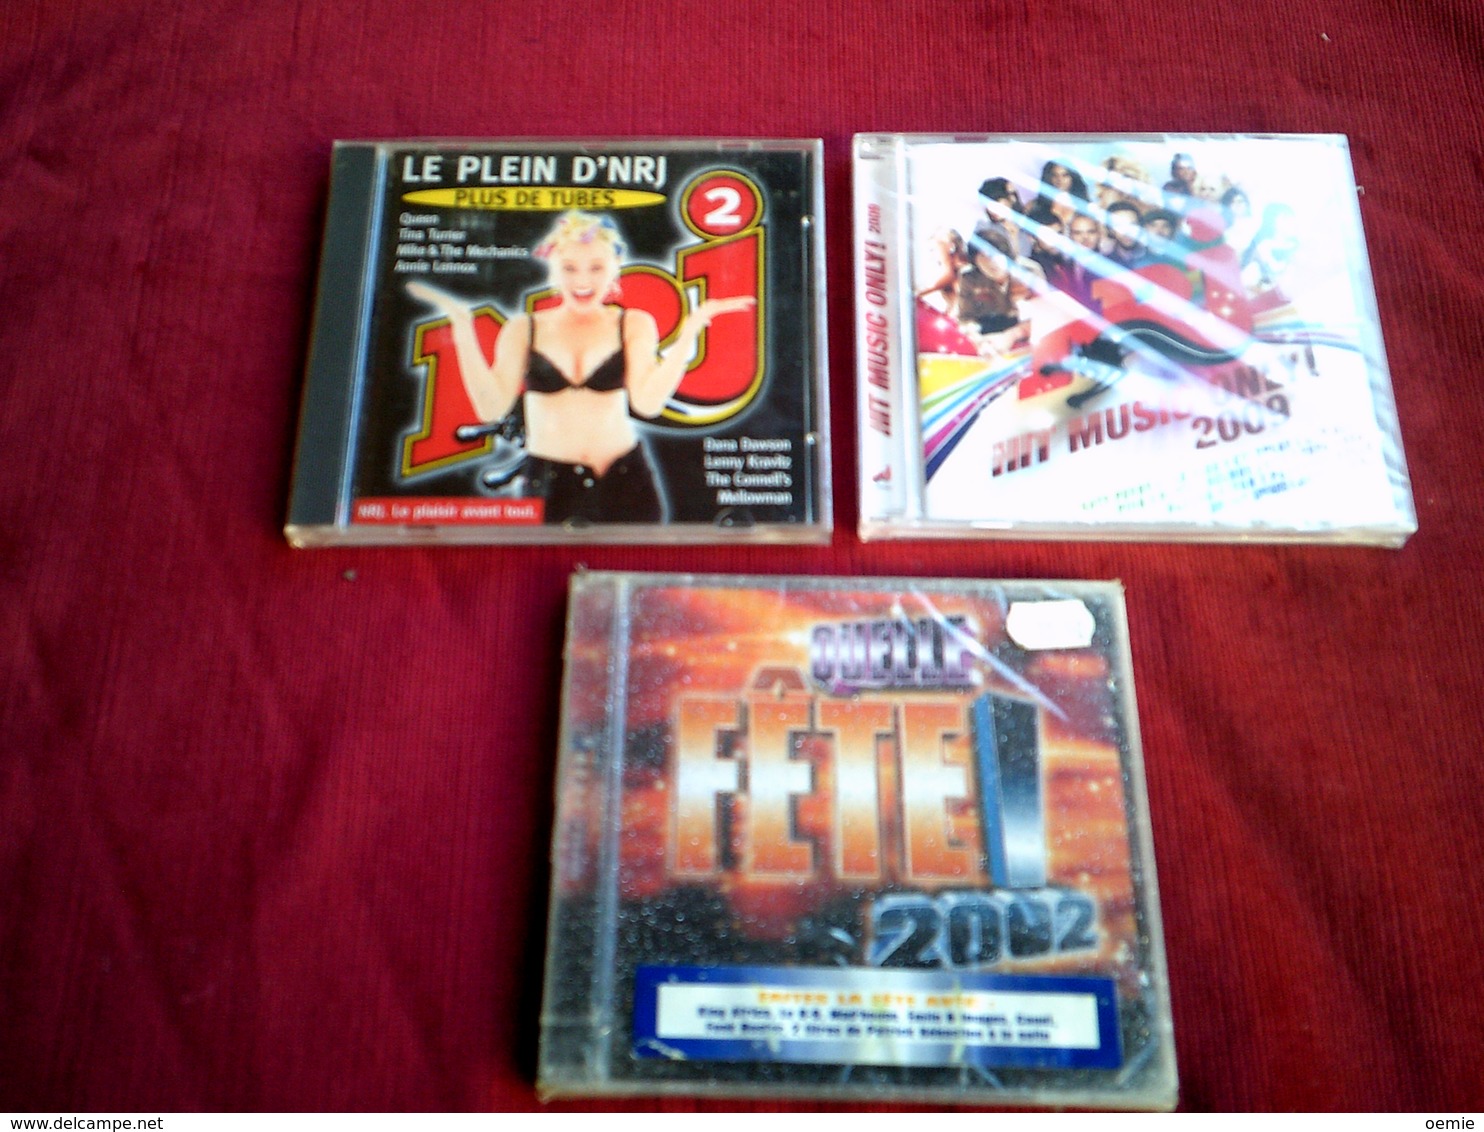 COLLECTION DE 3 CD ALBUM  DE COMPILATION  ° NRJ   ° HIT MUSIC ONLY 2009  DOUBLE CD 33 TITRES+ NRJ 2 + FETE 2002 - Vollständige Sammlungen